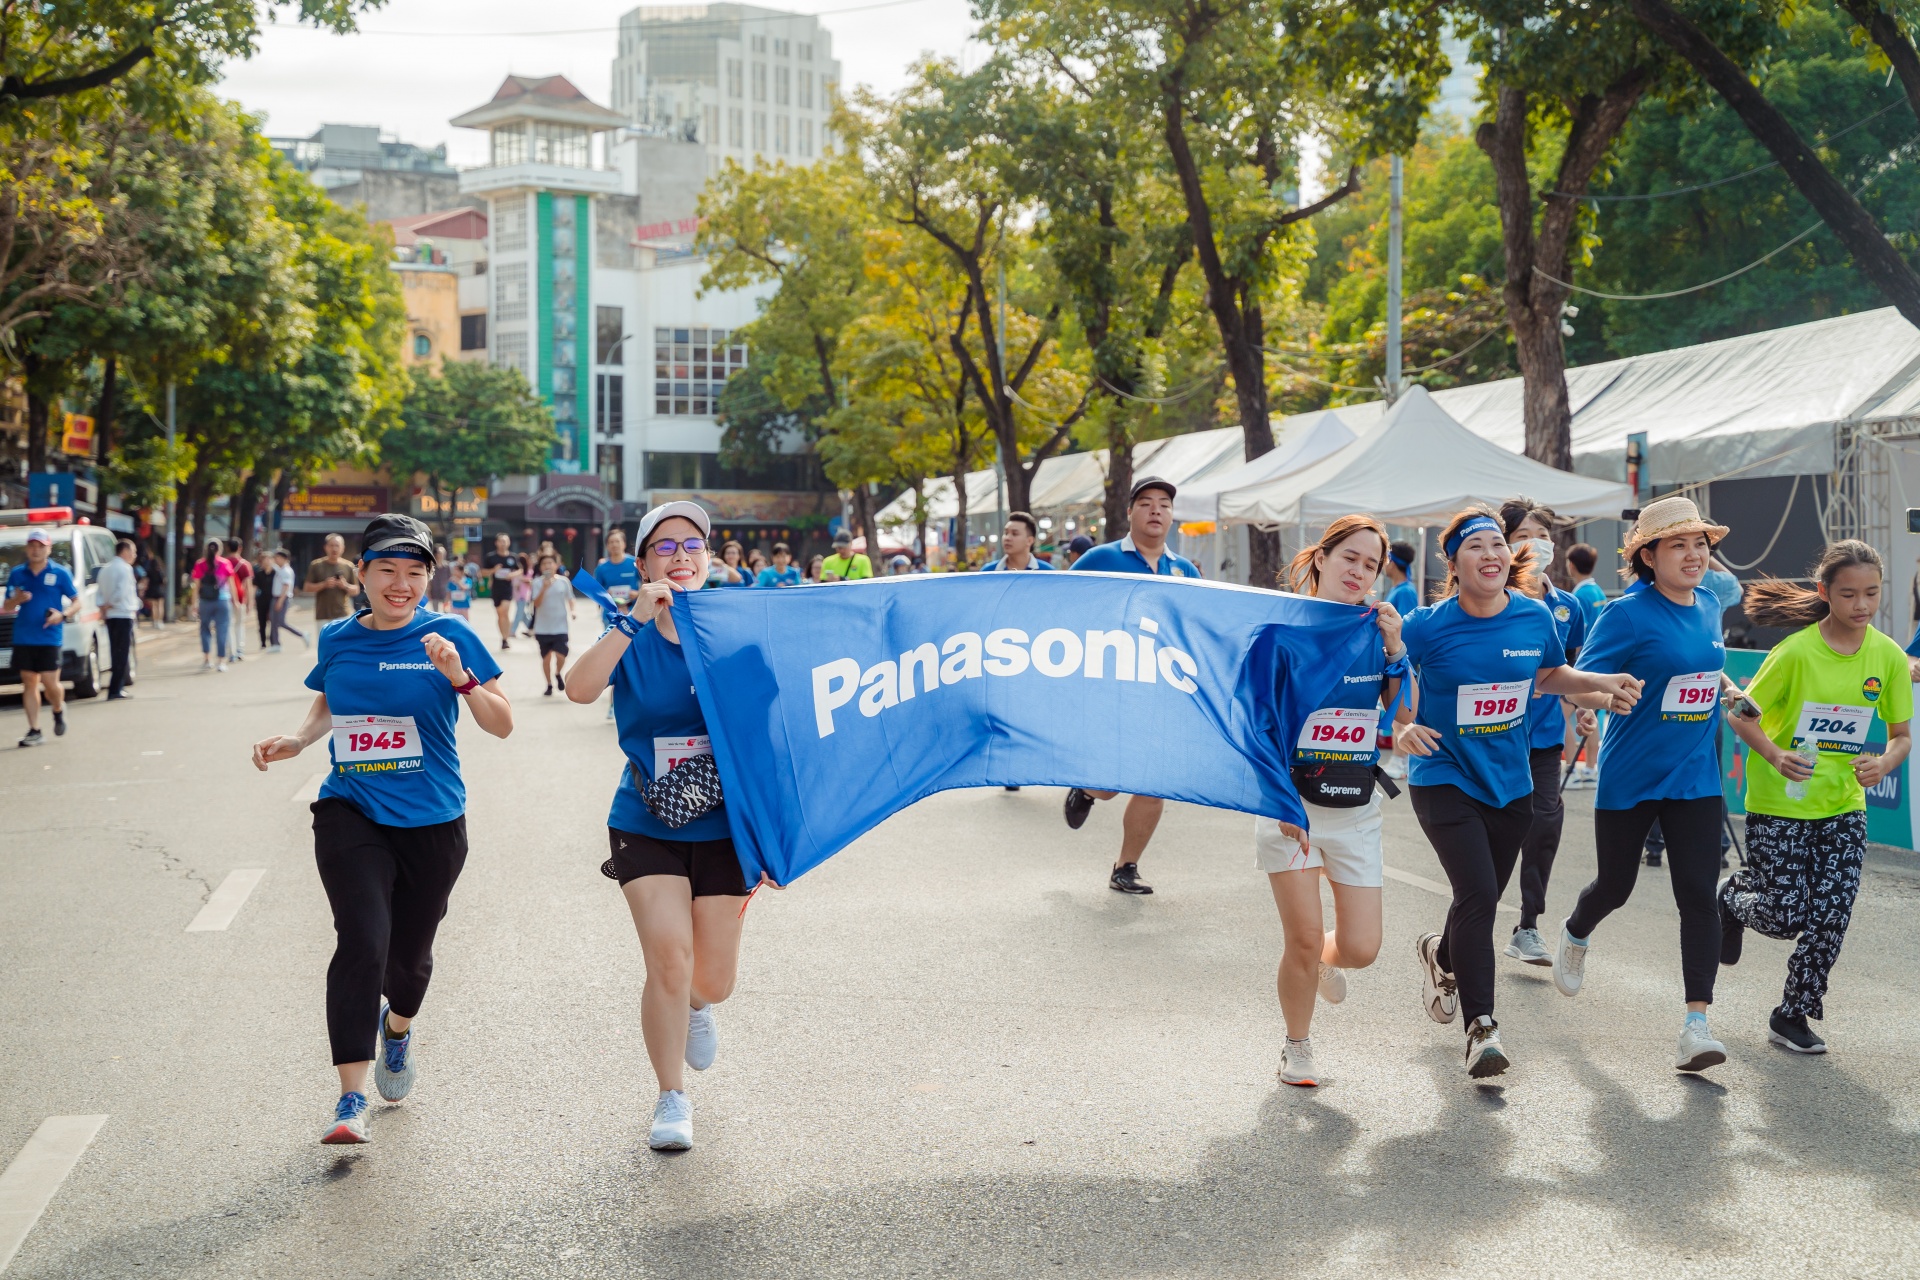 Panasonic inspires at Mottainai Run